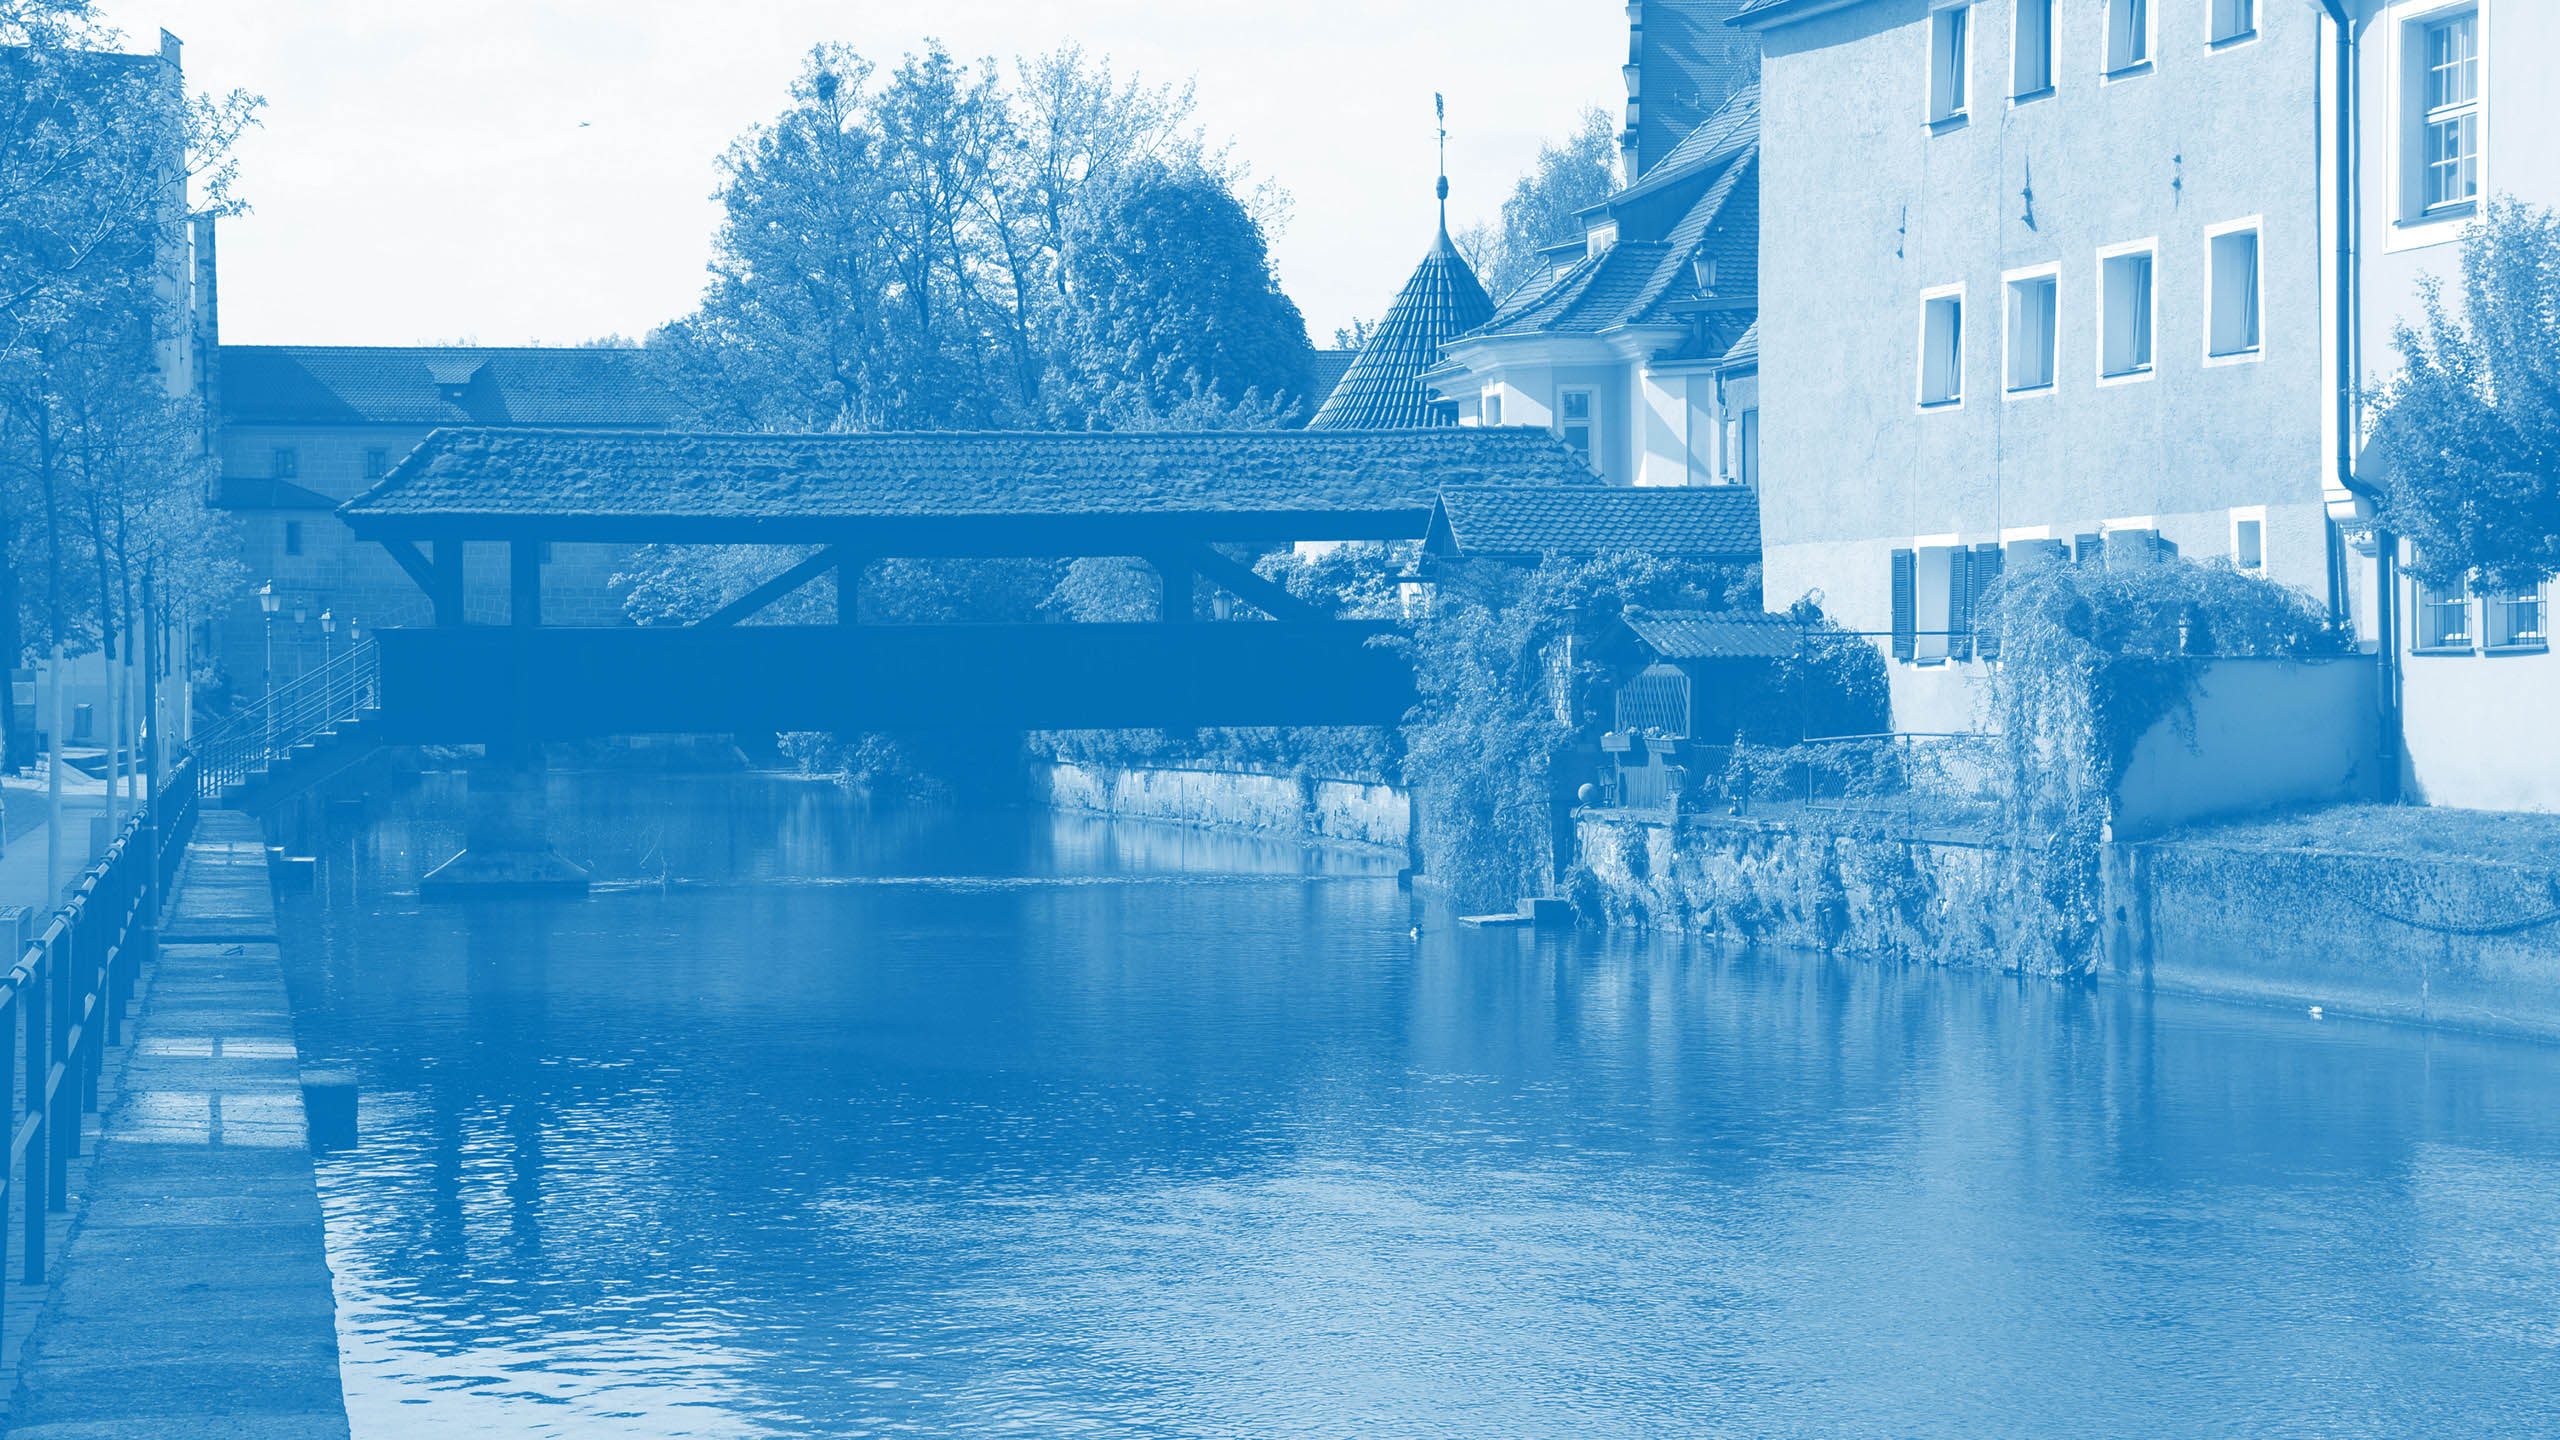 Blick auf einen Fluss mit überdachter Brücke und Häusern am Ufer als Hintergrundbild für den Markenwert „Zuverlässigkeit“ von Oberpfalz Medien.